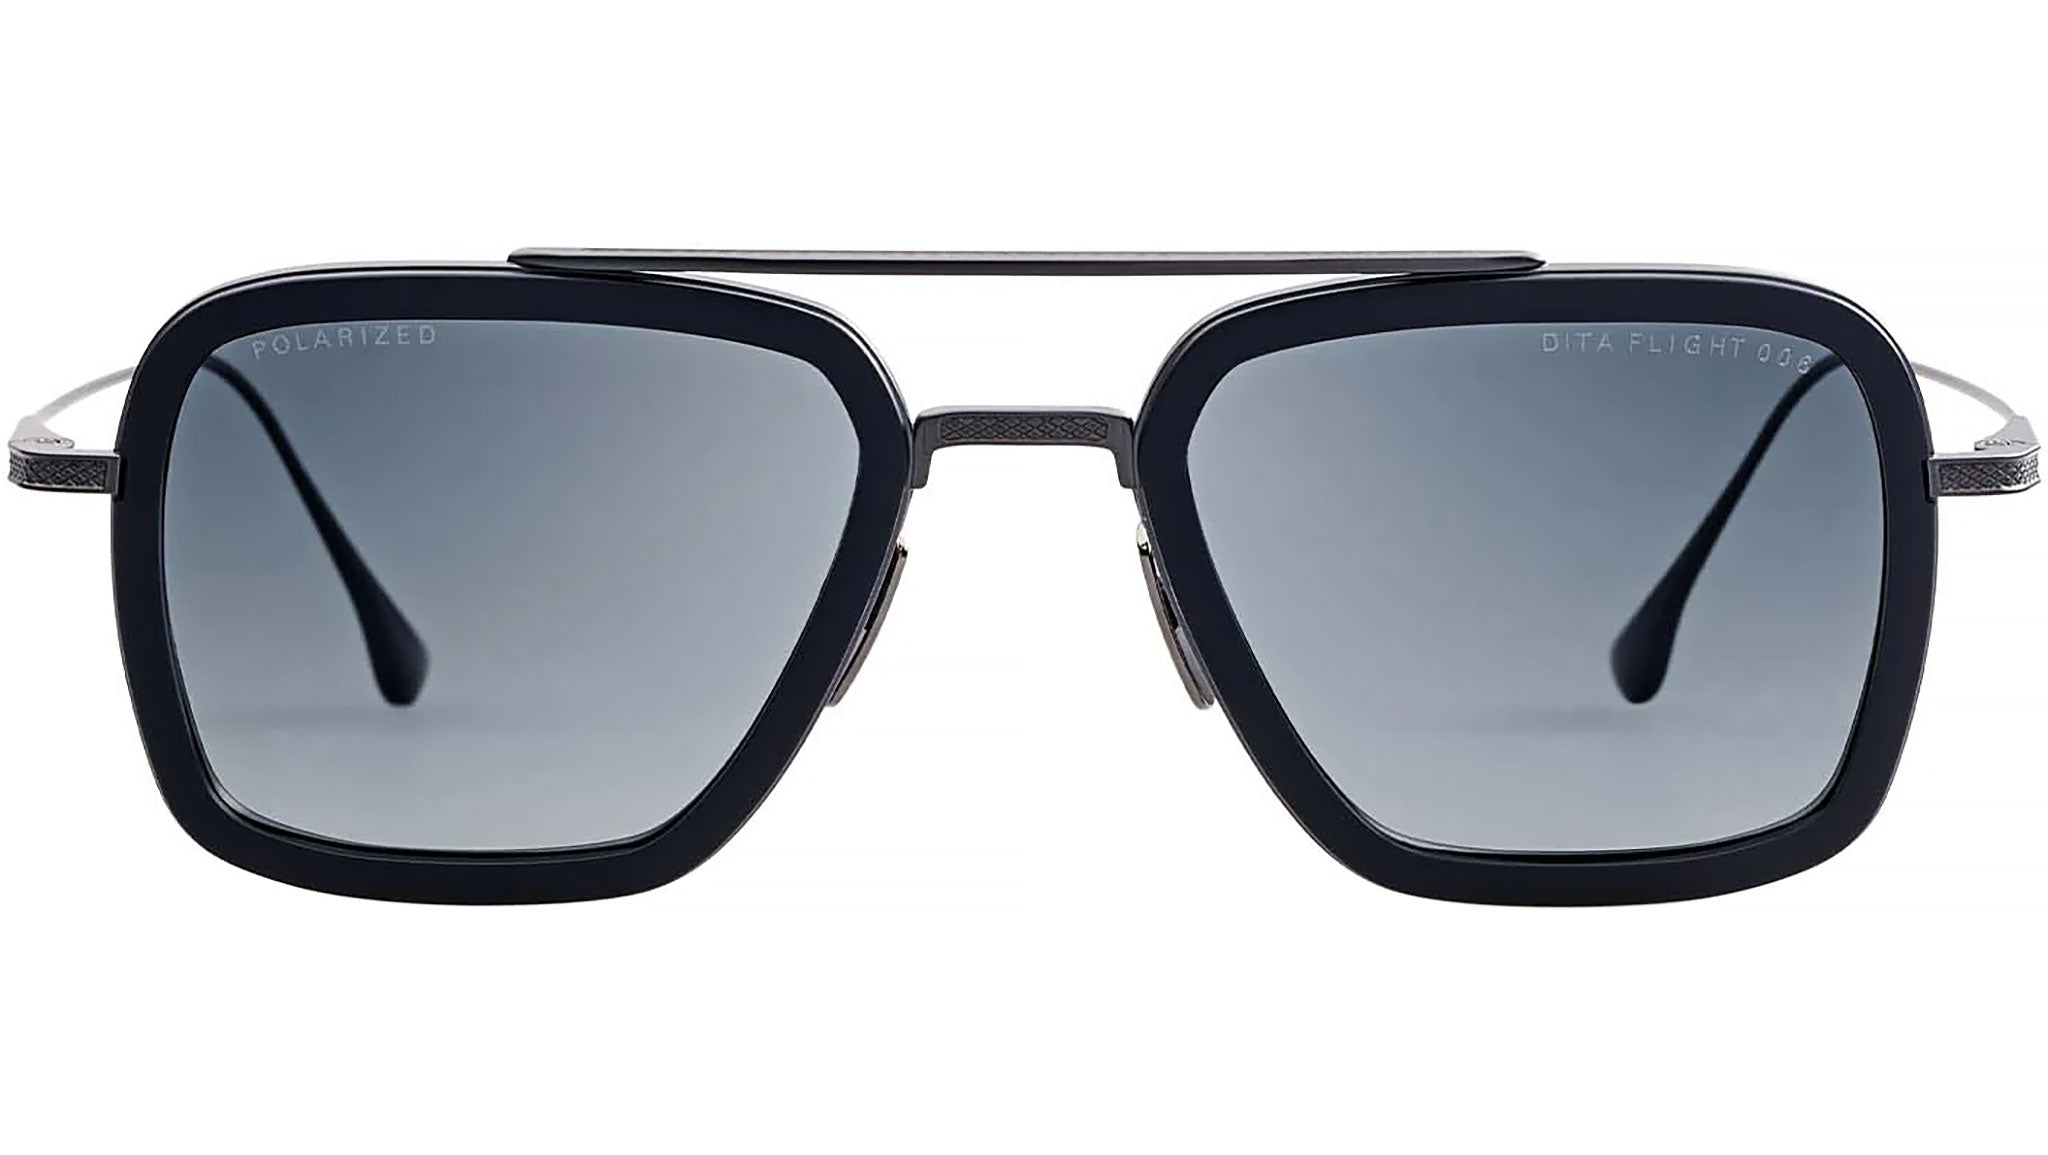 Dita Flight 004 Sunglasses 7804 C P 18K Gold / Dark Grey Blue Mirror  Polarized : Dita: Amazon.co.uk: Fashion